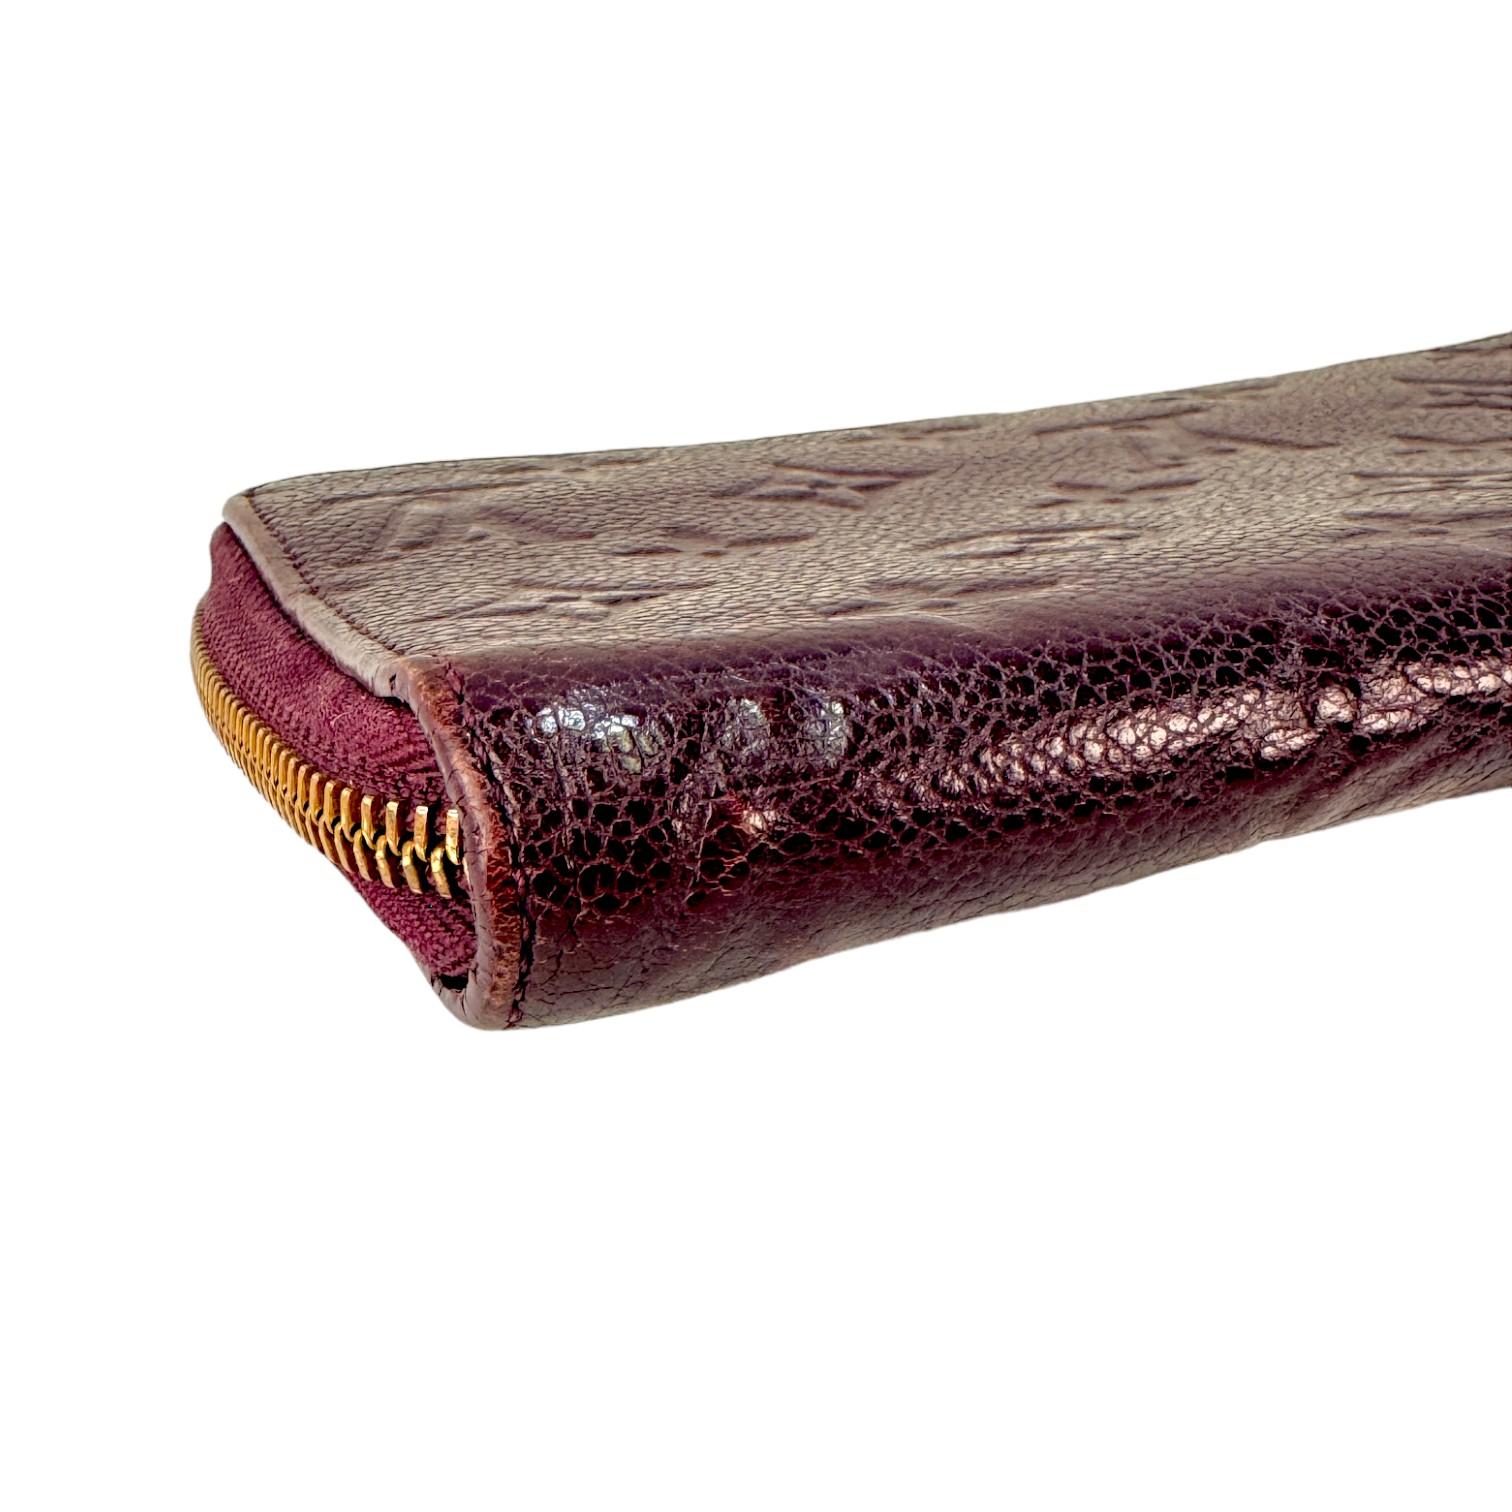 Authentic estate Louis Vuitton Empriente Zippy purple leather wallet